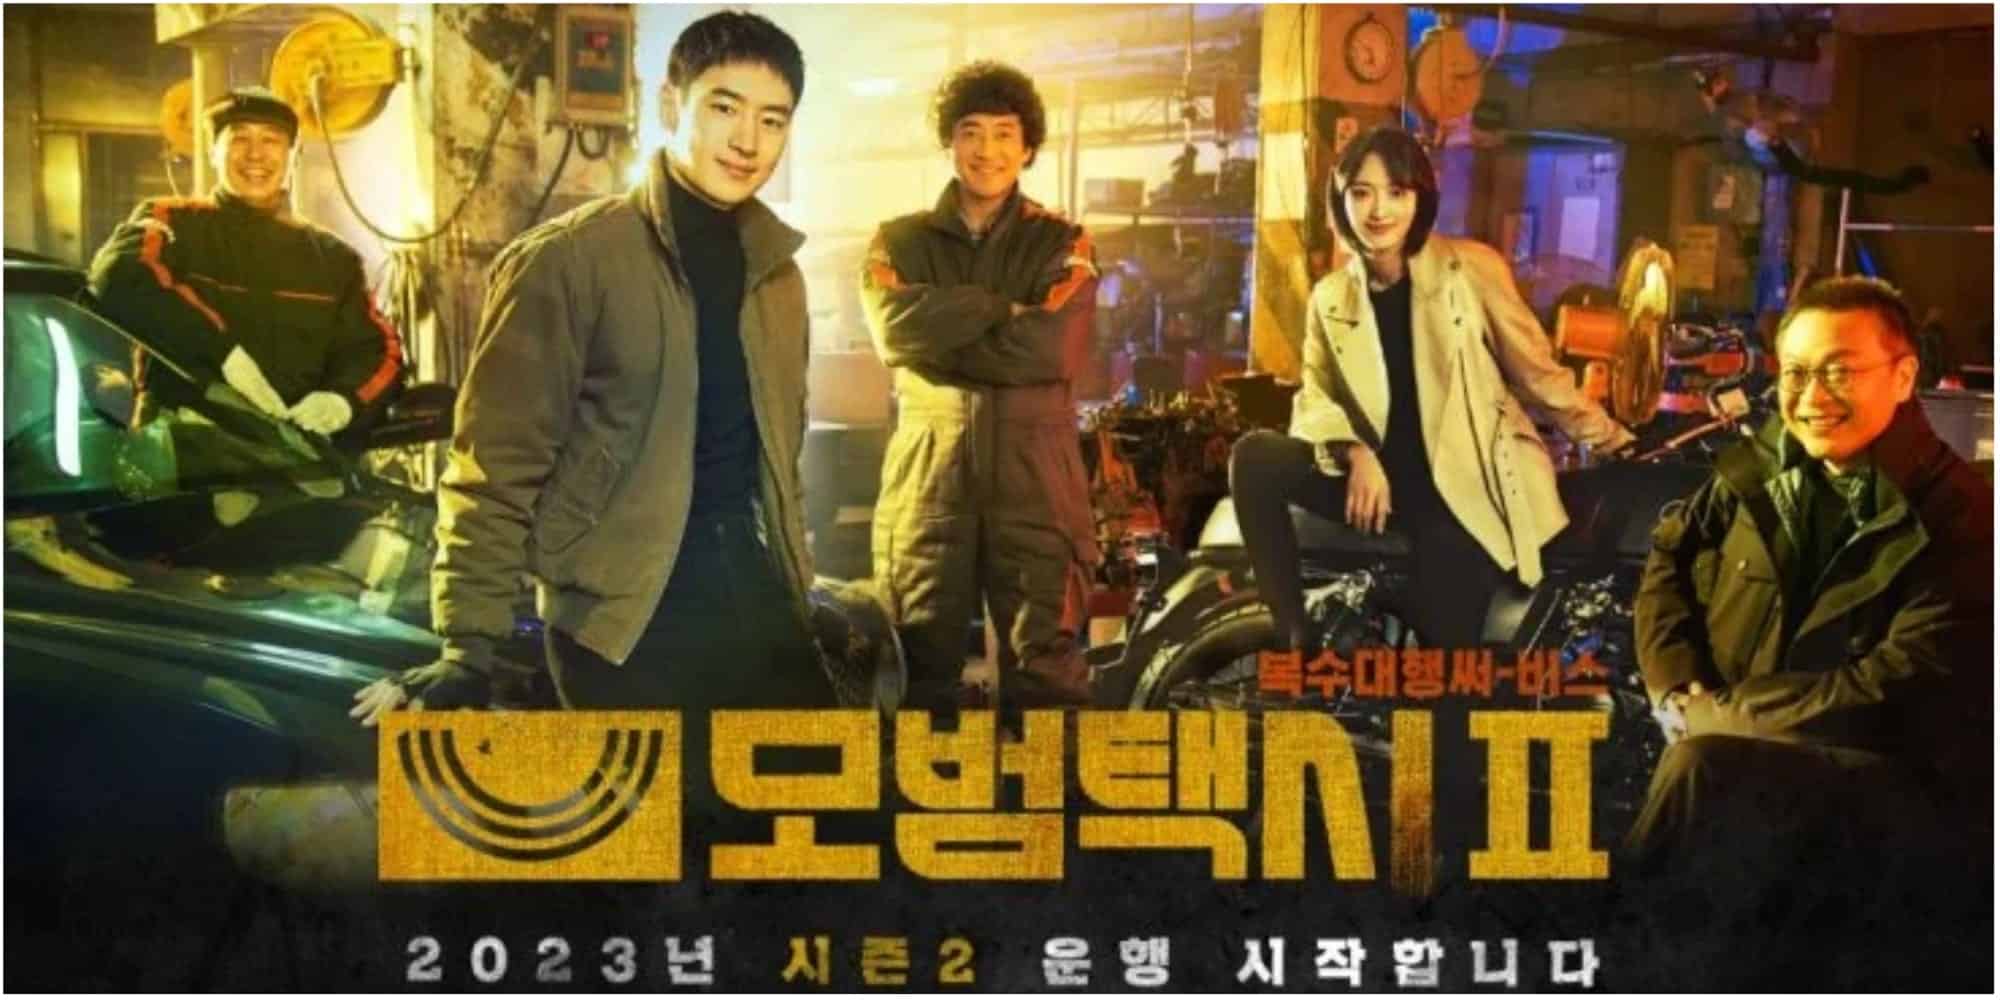 Taxi Driver Thriller Korean Drama Season 2 Synopsis